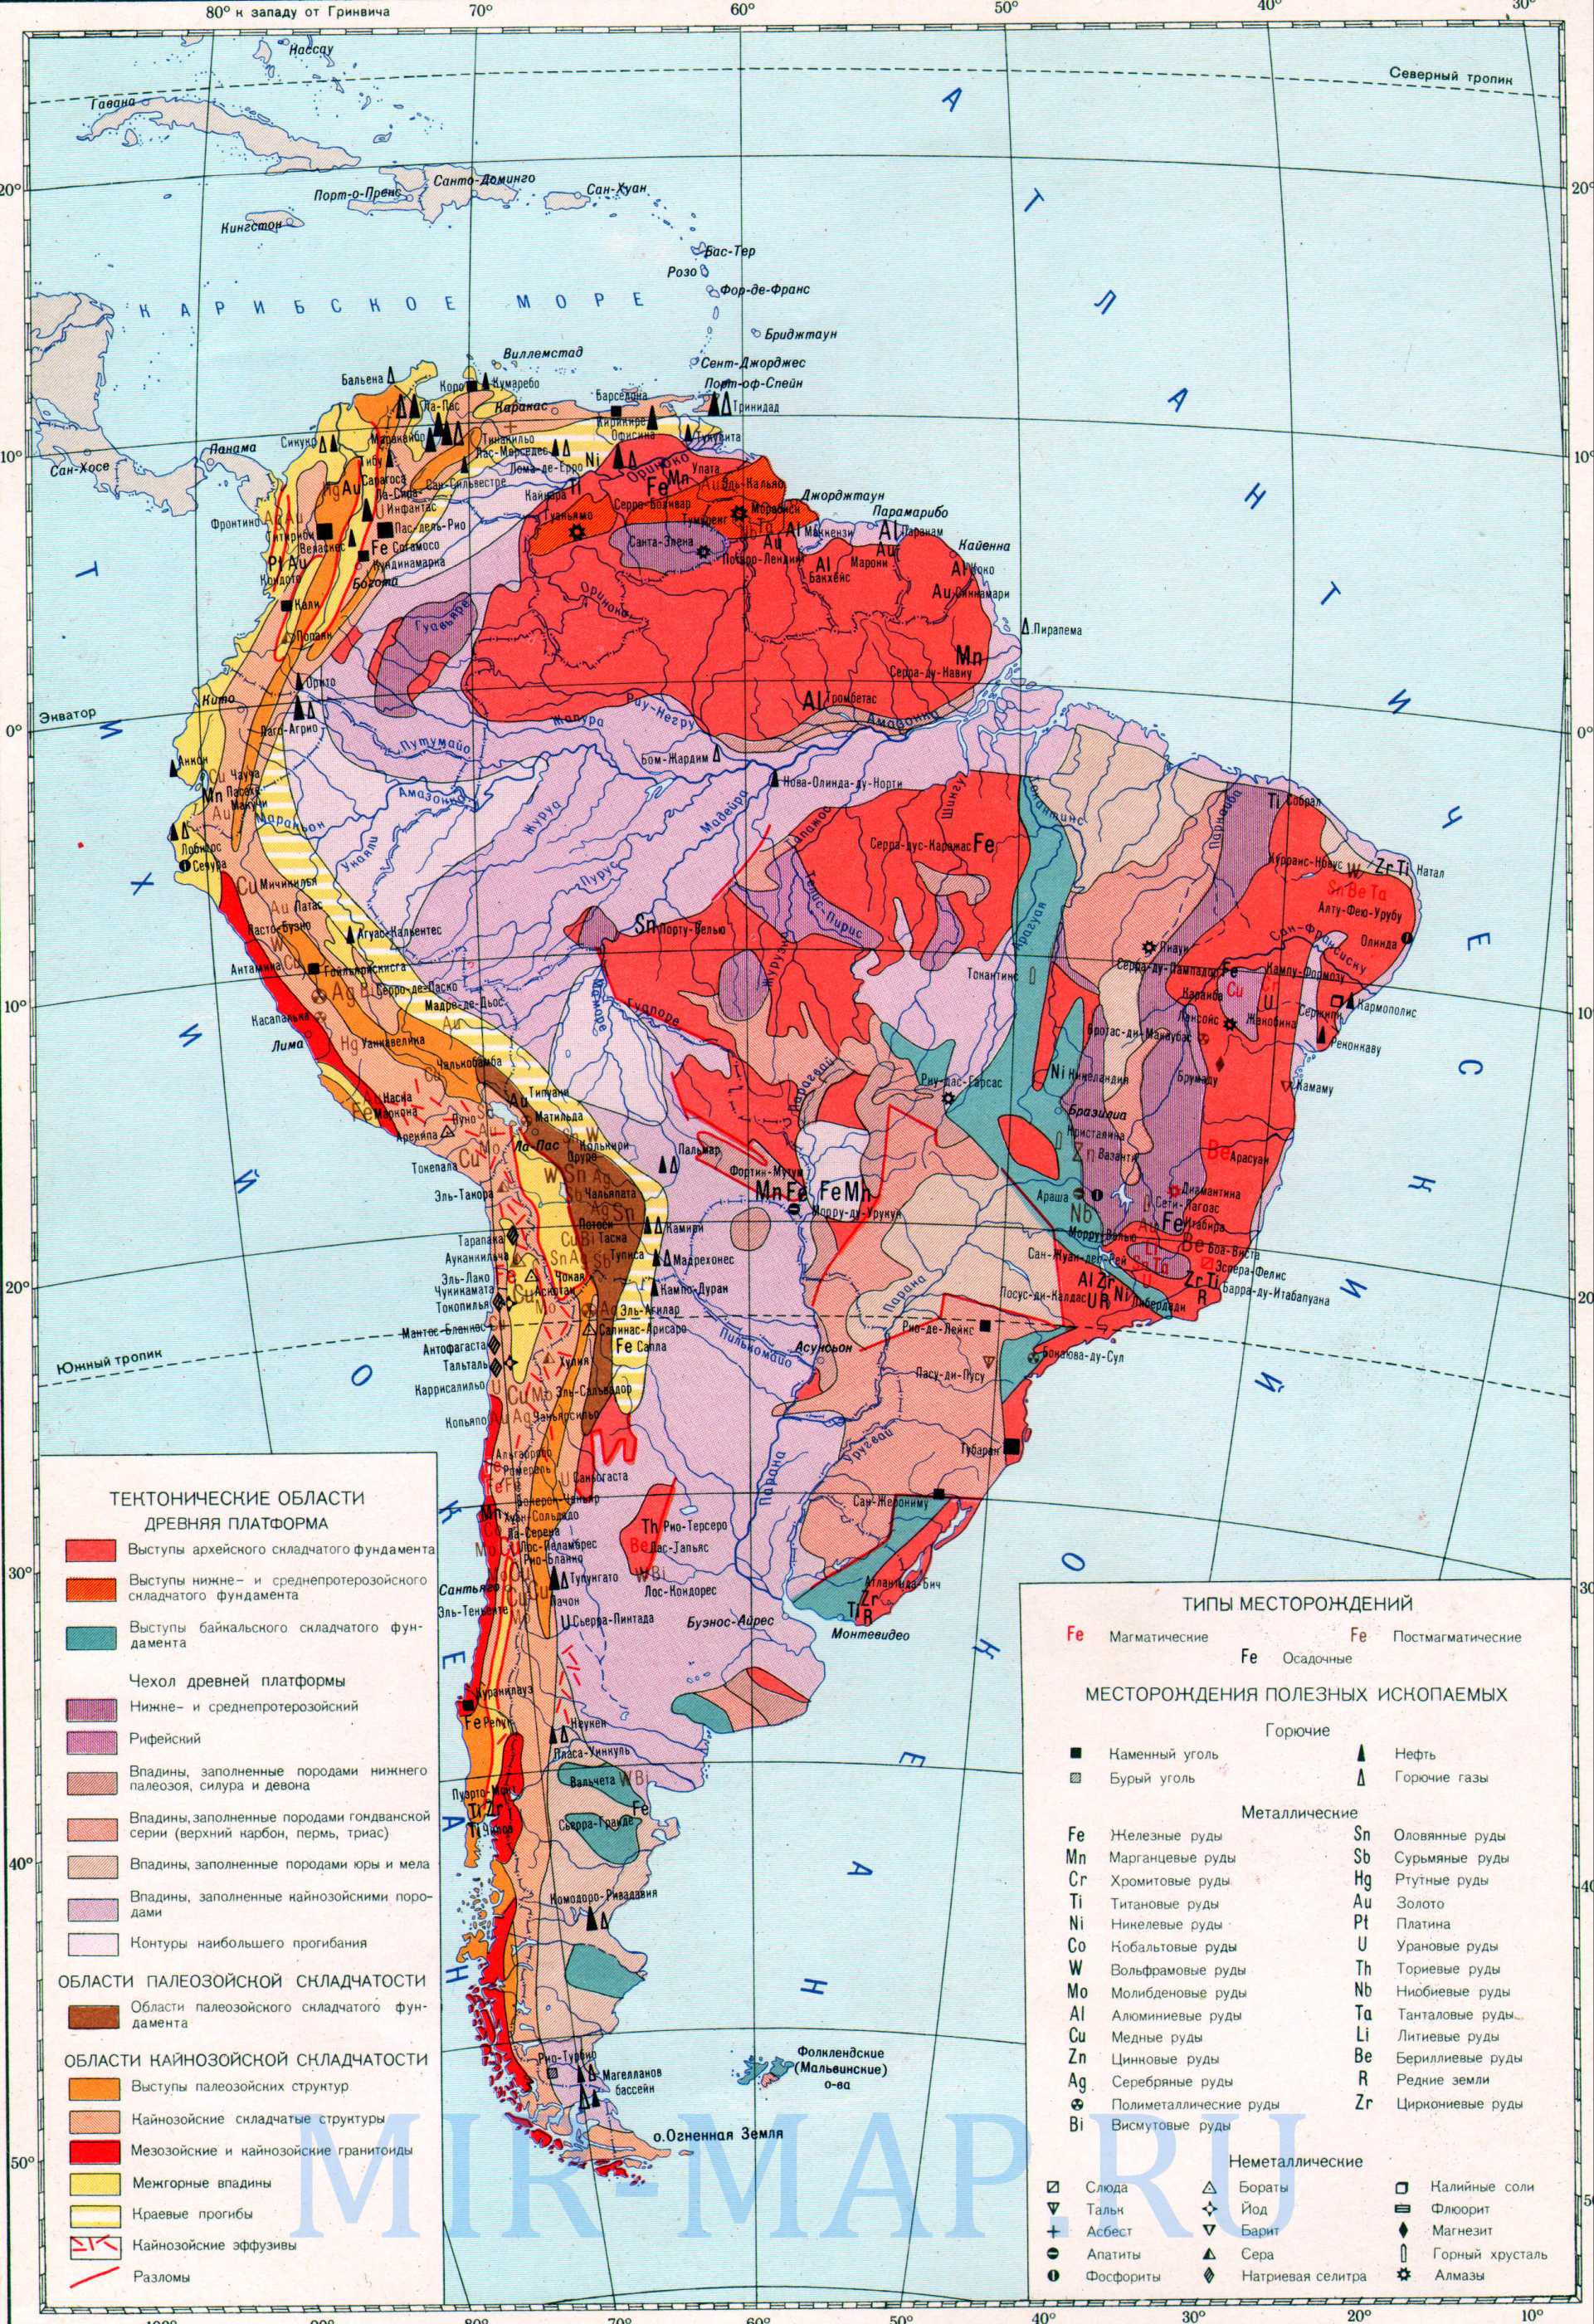 Карта месторождений Южной Америки. Карта Южной Америки - месторождения полезных ископаемых. Карта месторождений полезных ископаемых Южной Америки, A0 - 